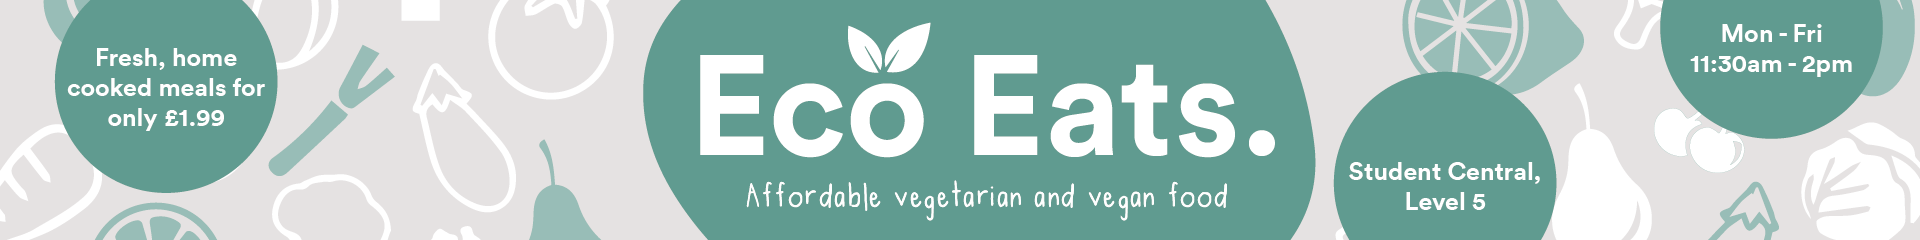 Eco eats banner